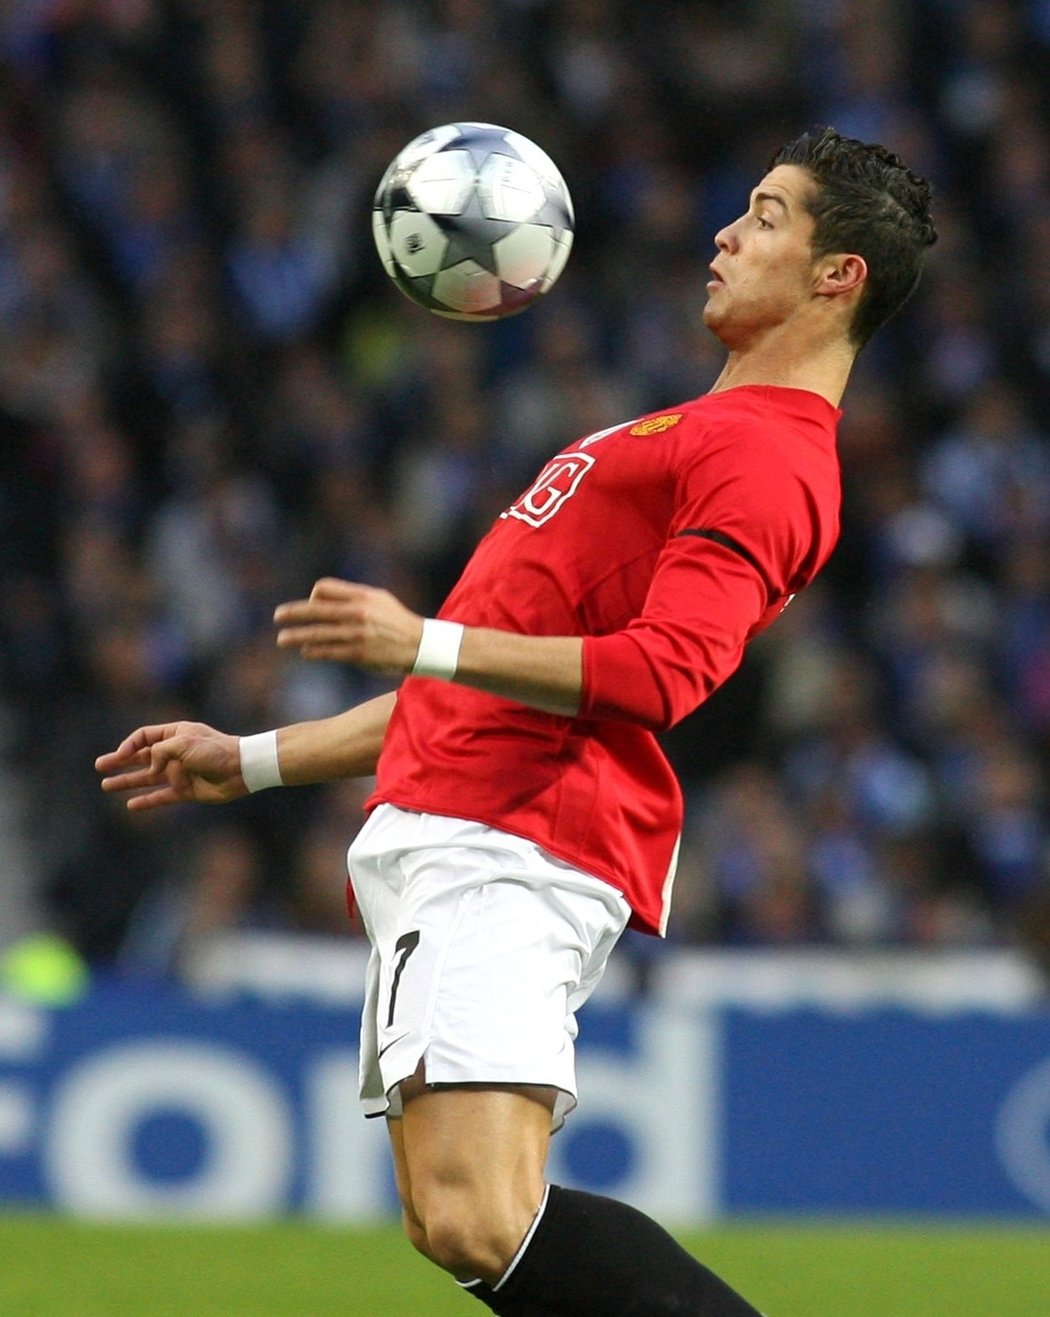 6. Cristiano Ronaldo (Manchester United) 196/84